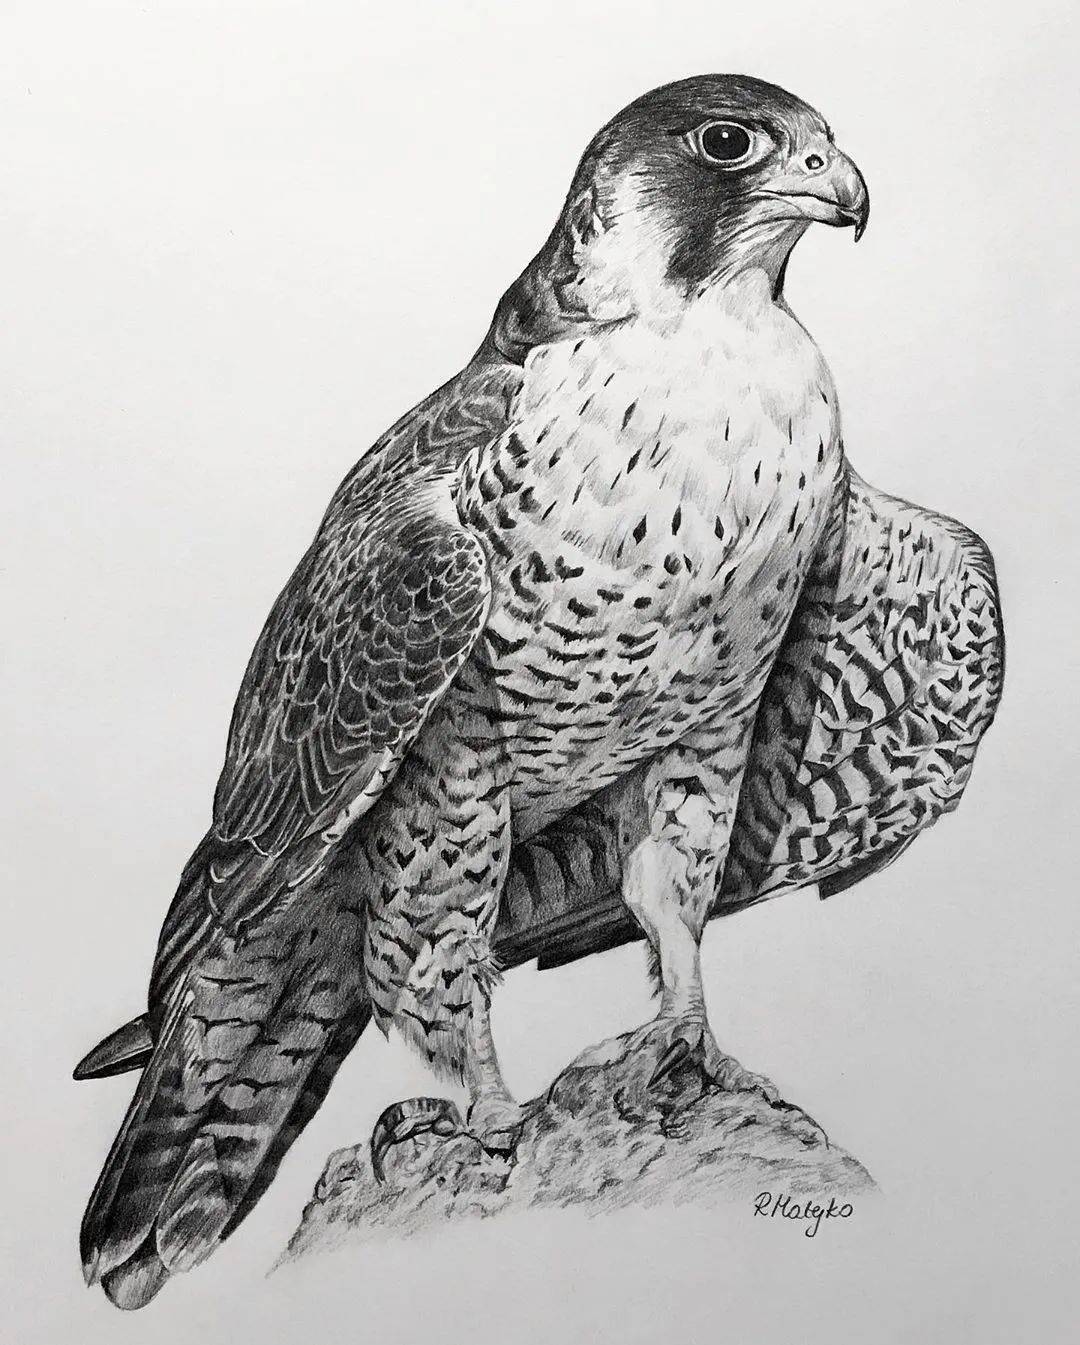 8小时画了一只猎鹰活灵活现的各种鸟类素描果断收藏